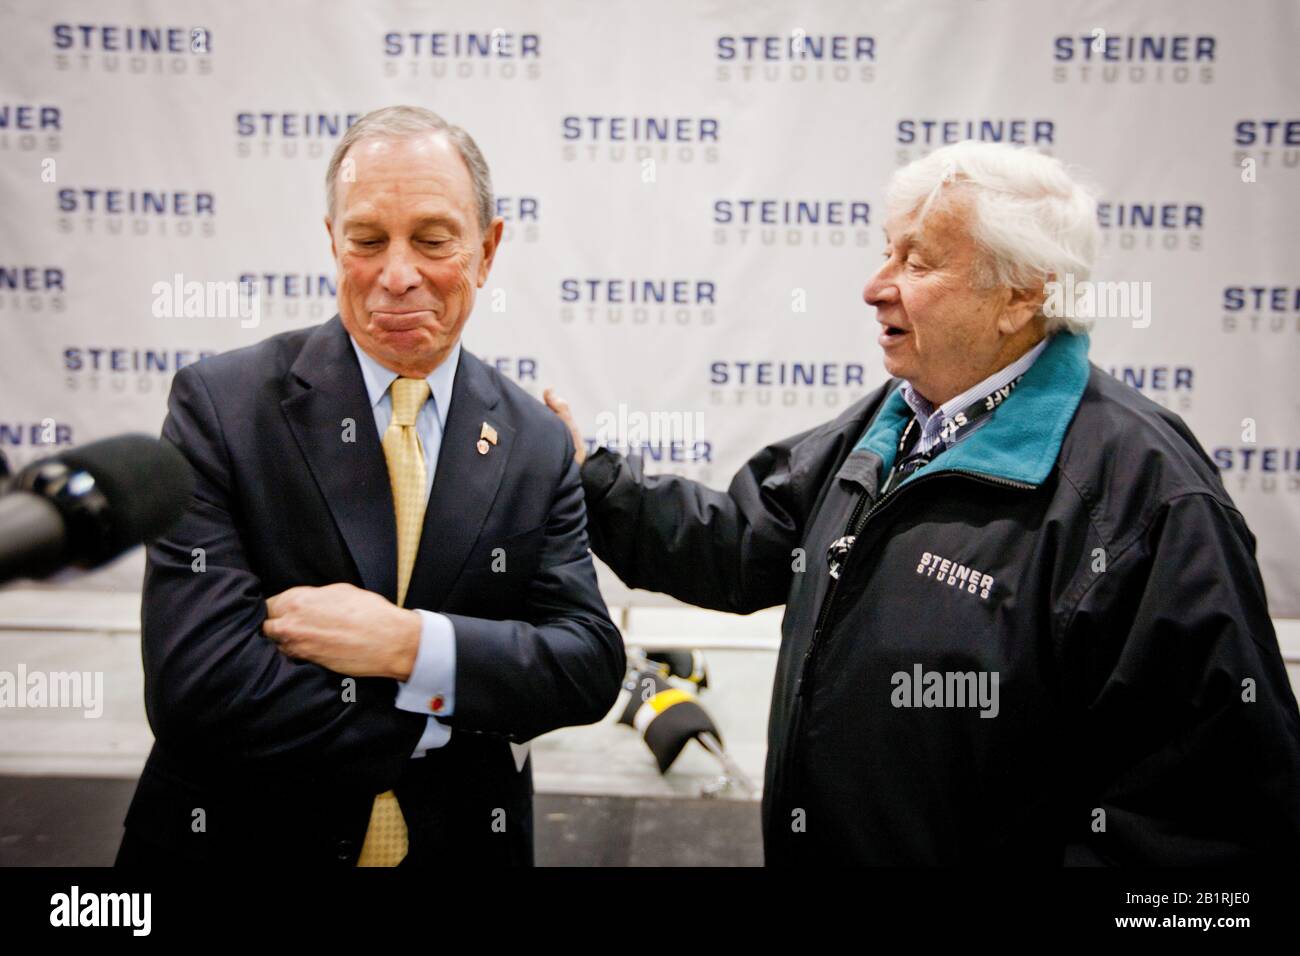 Michael J. Bloomberg, alcalde de la ciudad de Nueva York, junto con David Steiner, en la inauguración de los nuevos Steiner Studios en Brooklyn Navy Yard. Nueva York siempre ha tenido una próspera industria cinematográfica, pero en dura competencia con ciudades de la costa oeste y Canadá. Foto de stock